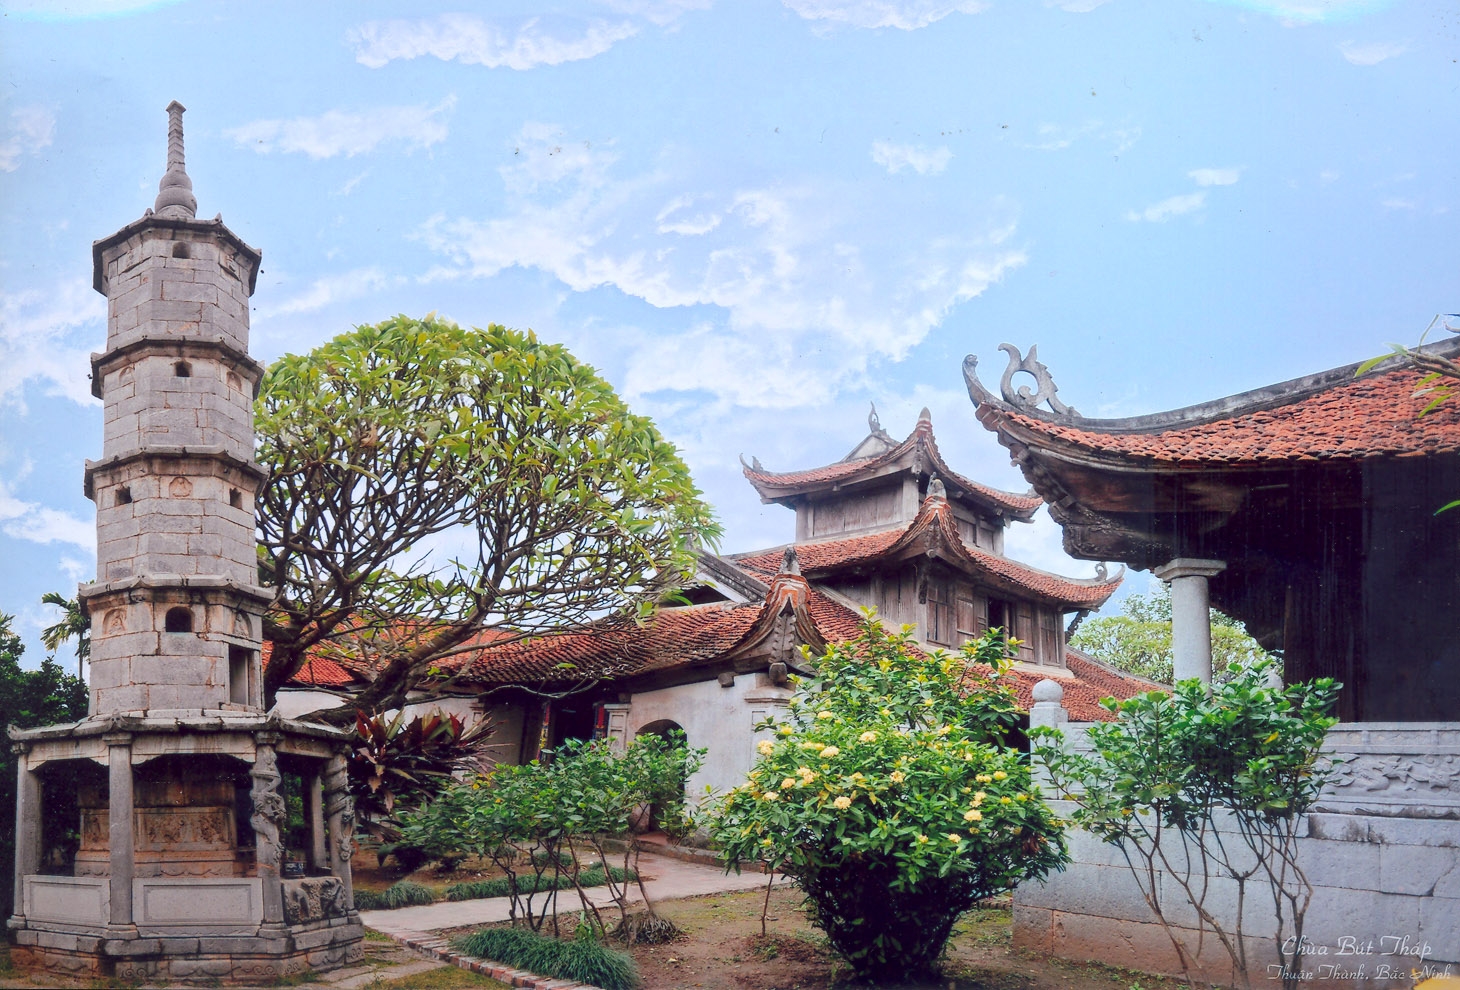 Ra mắt tour “Du lịch Tâm linh về miền Kinh Bắc” 